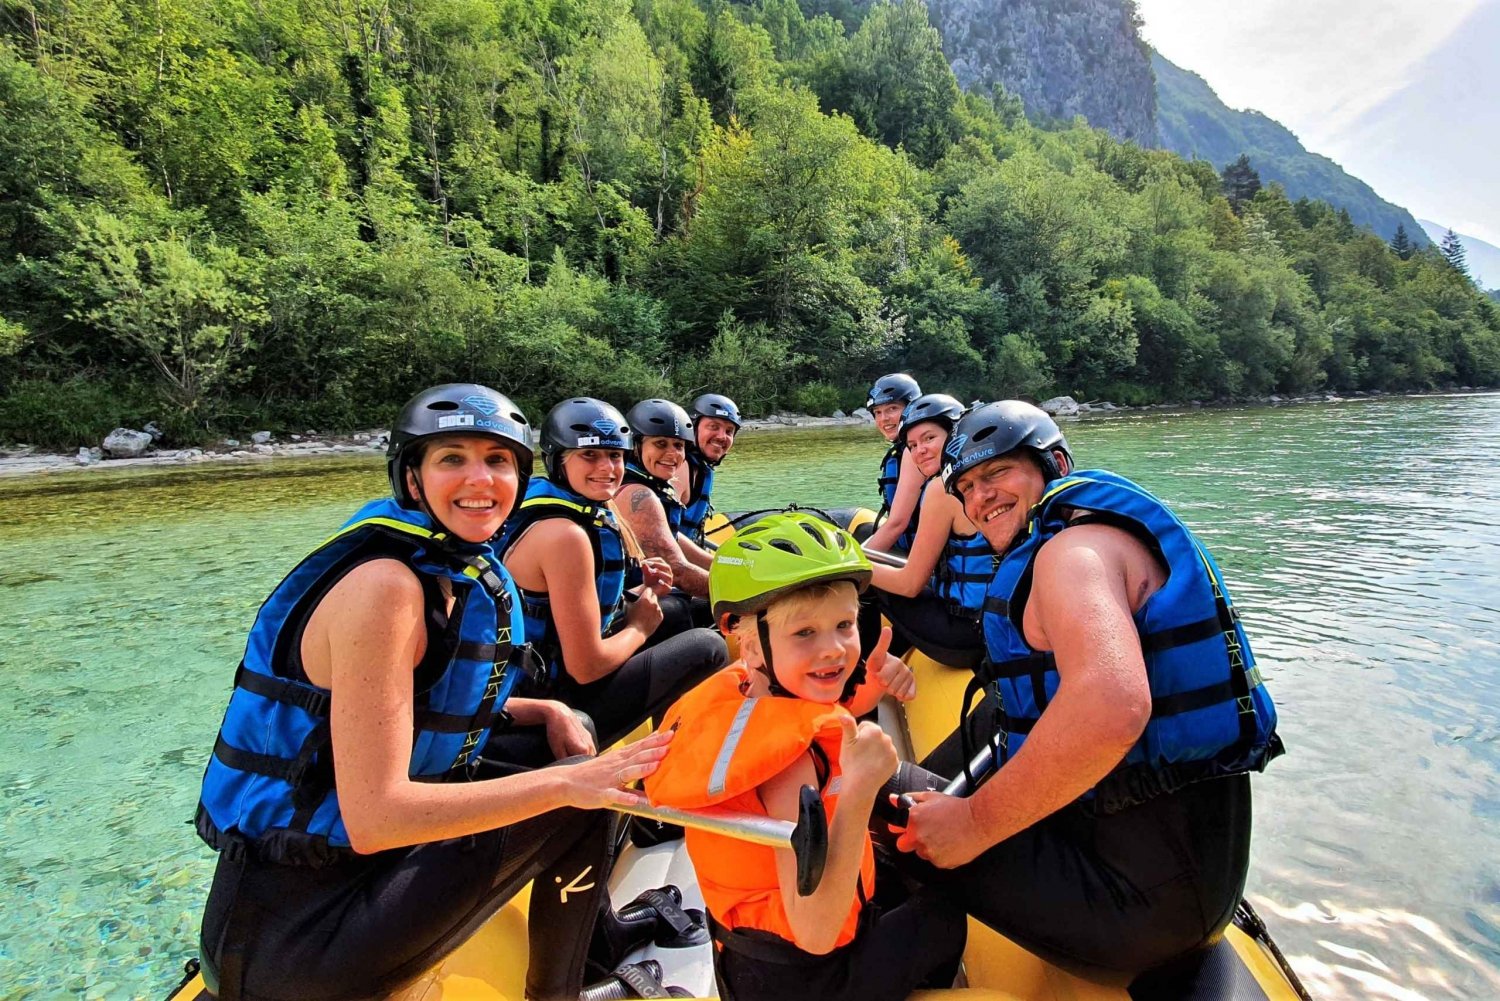 Bovec : Rafting familial sur la rivière Soča + photos GRATUITES